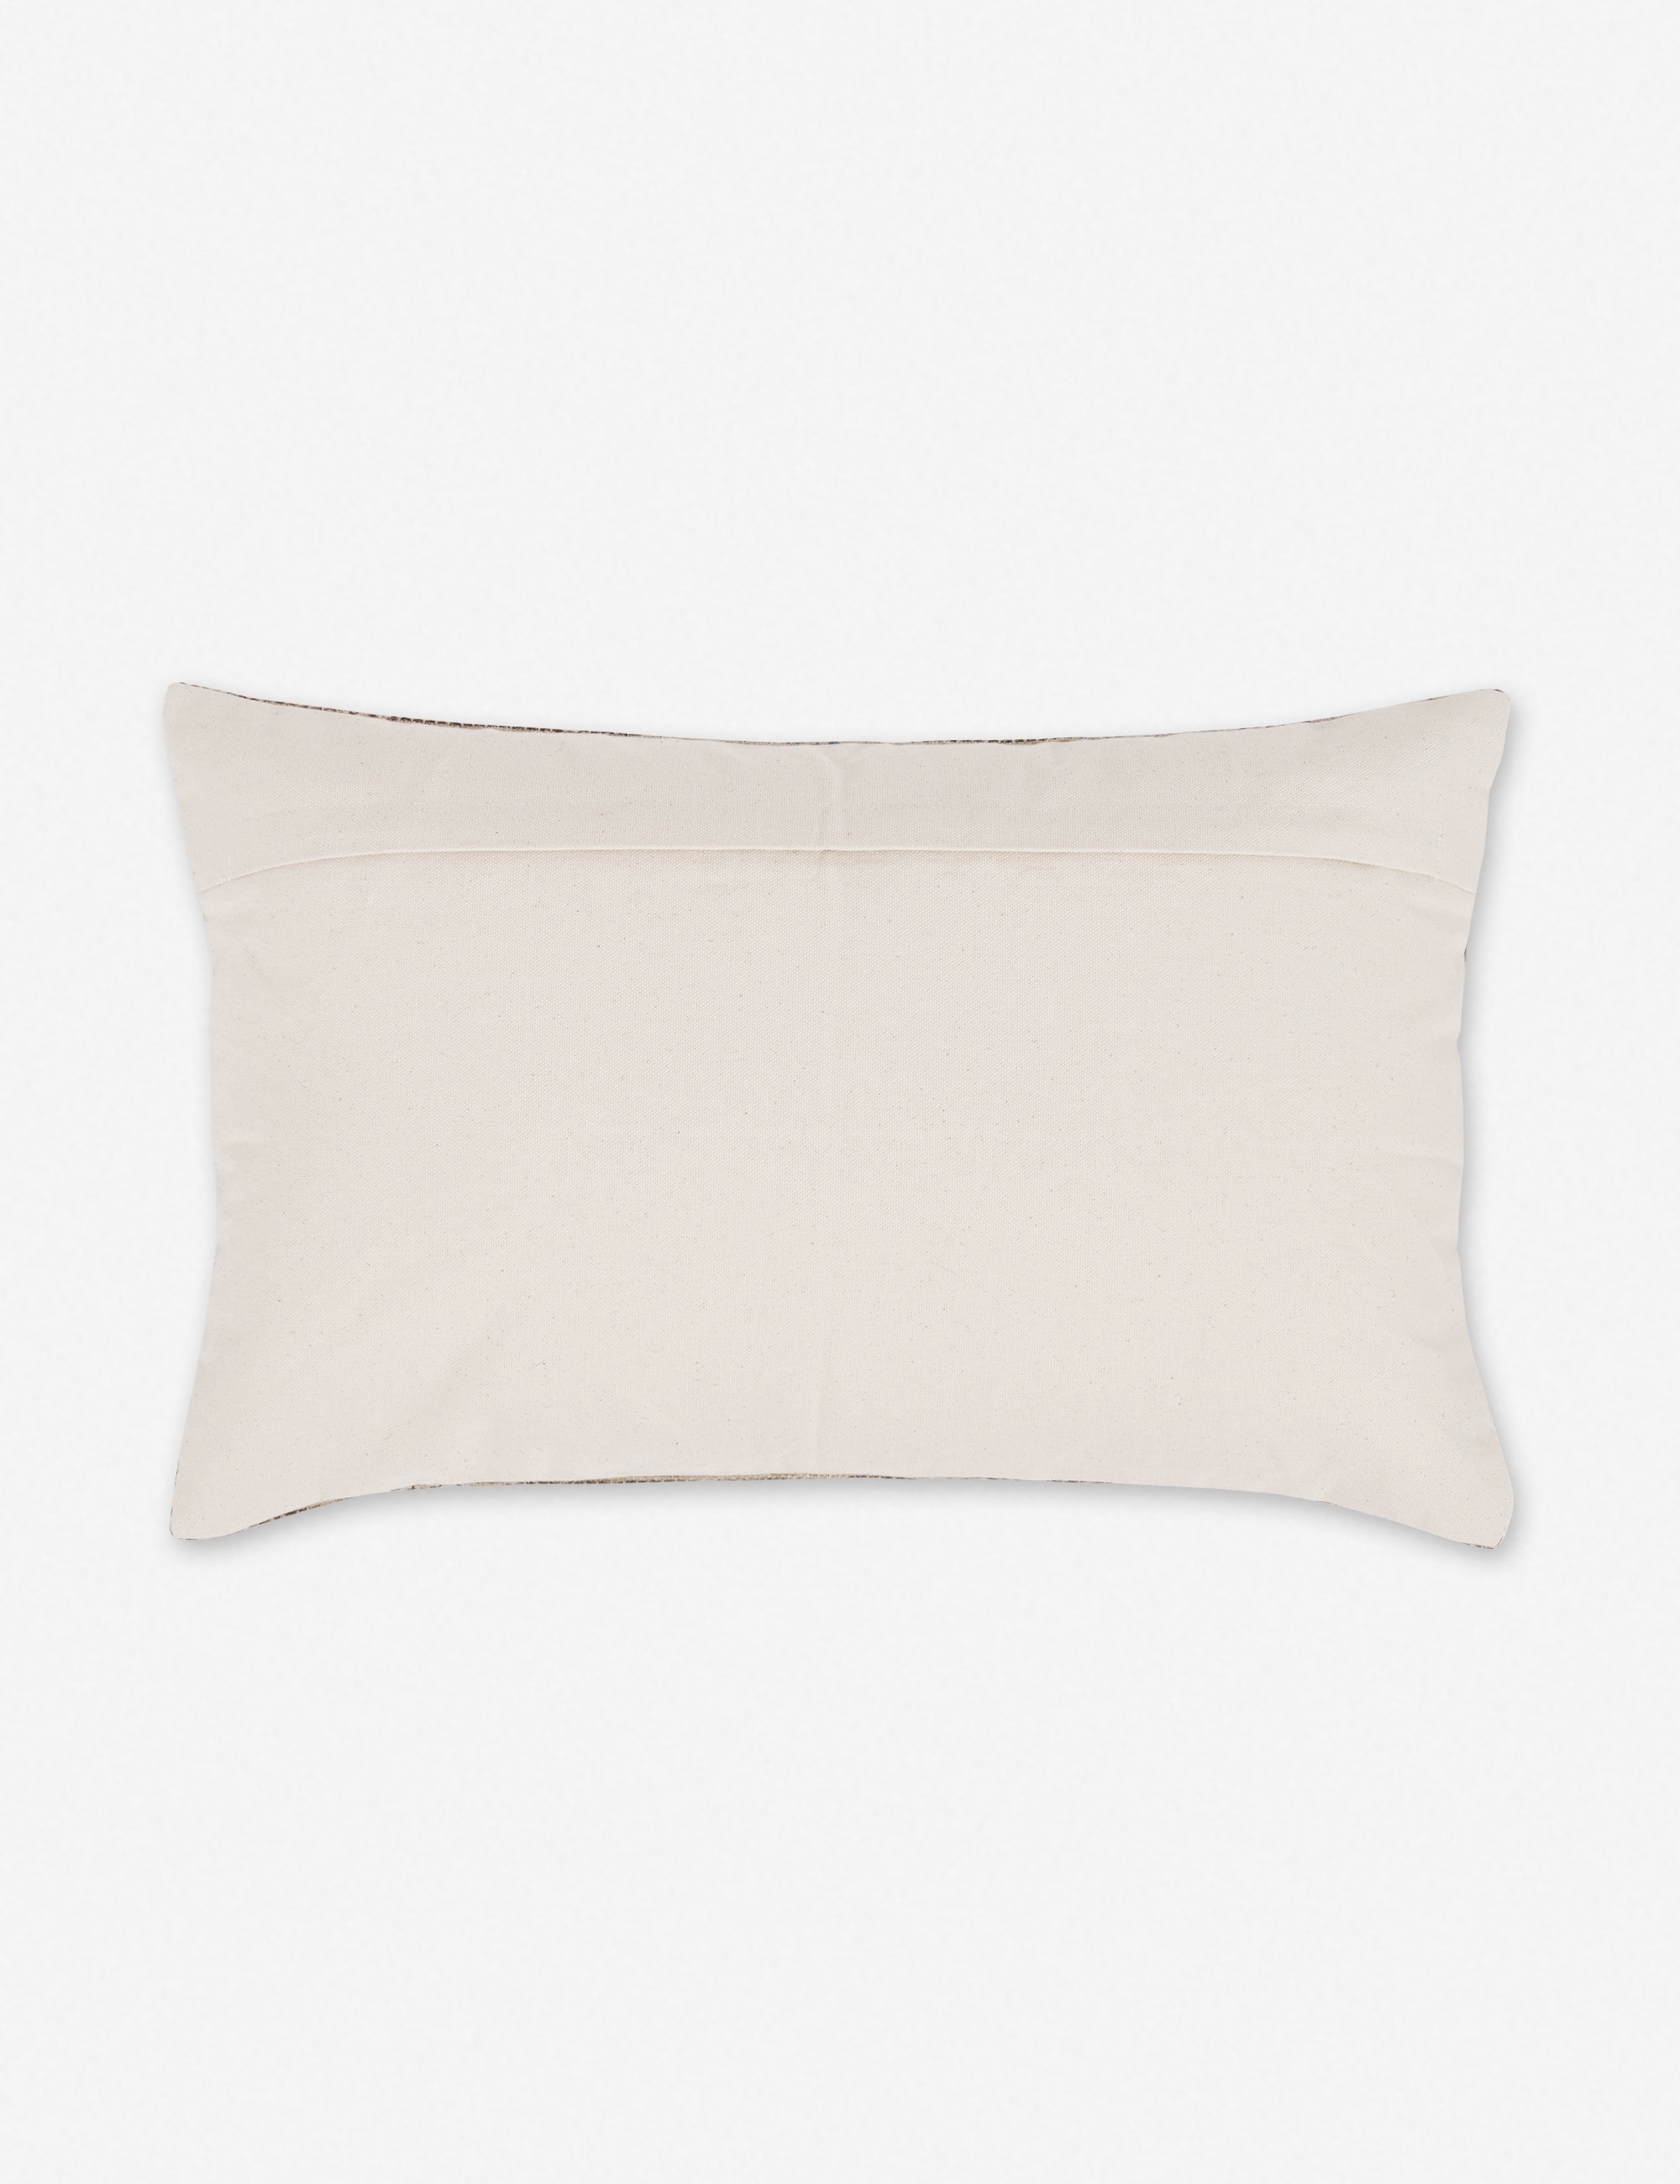 Rica Lumbar Pillow, 20" x 13" - Image 2